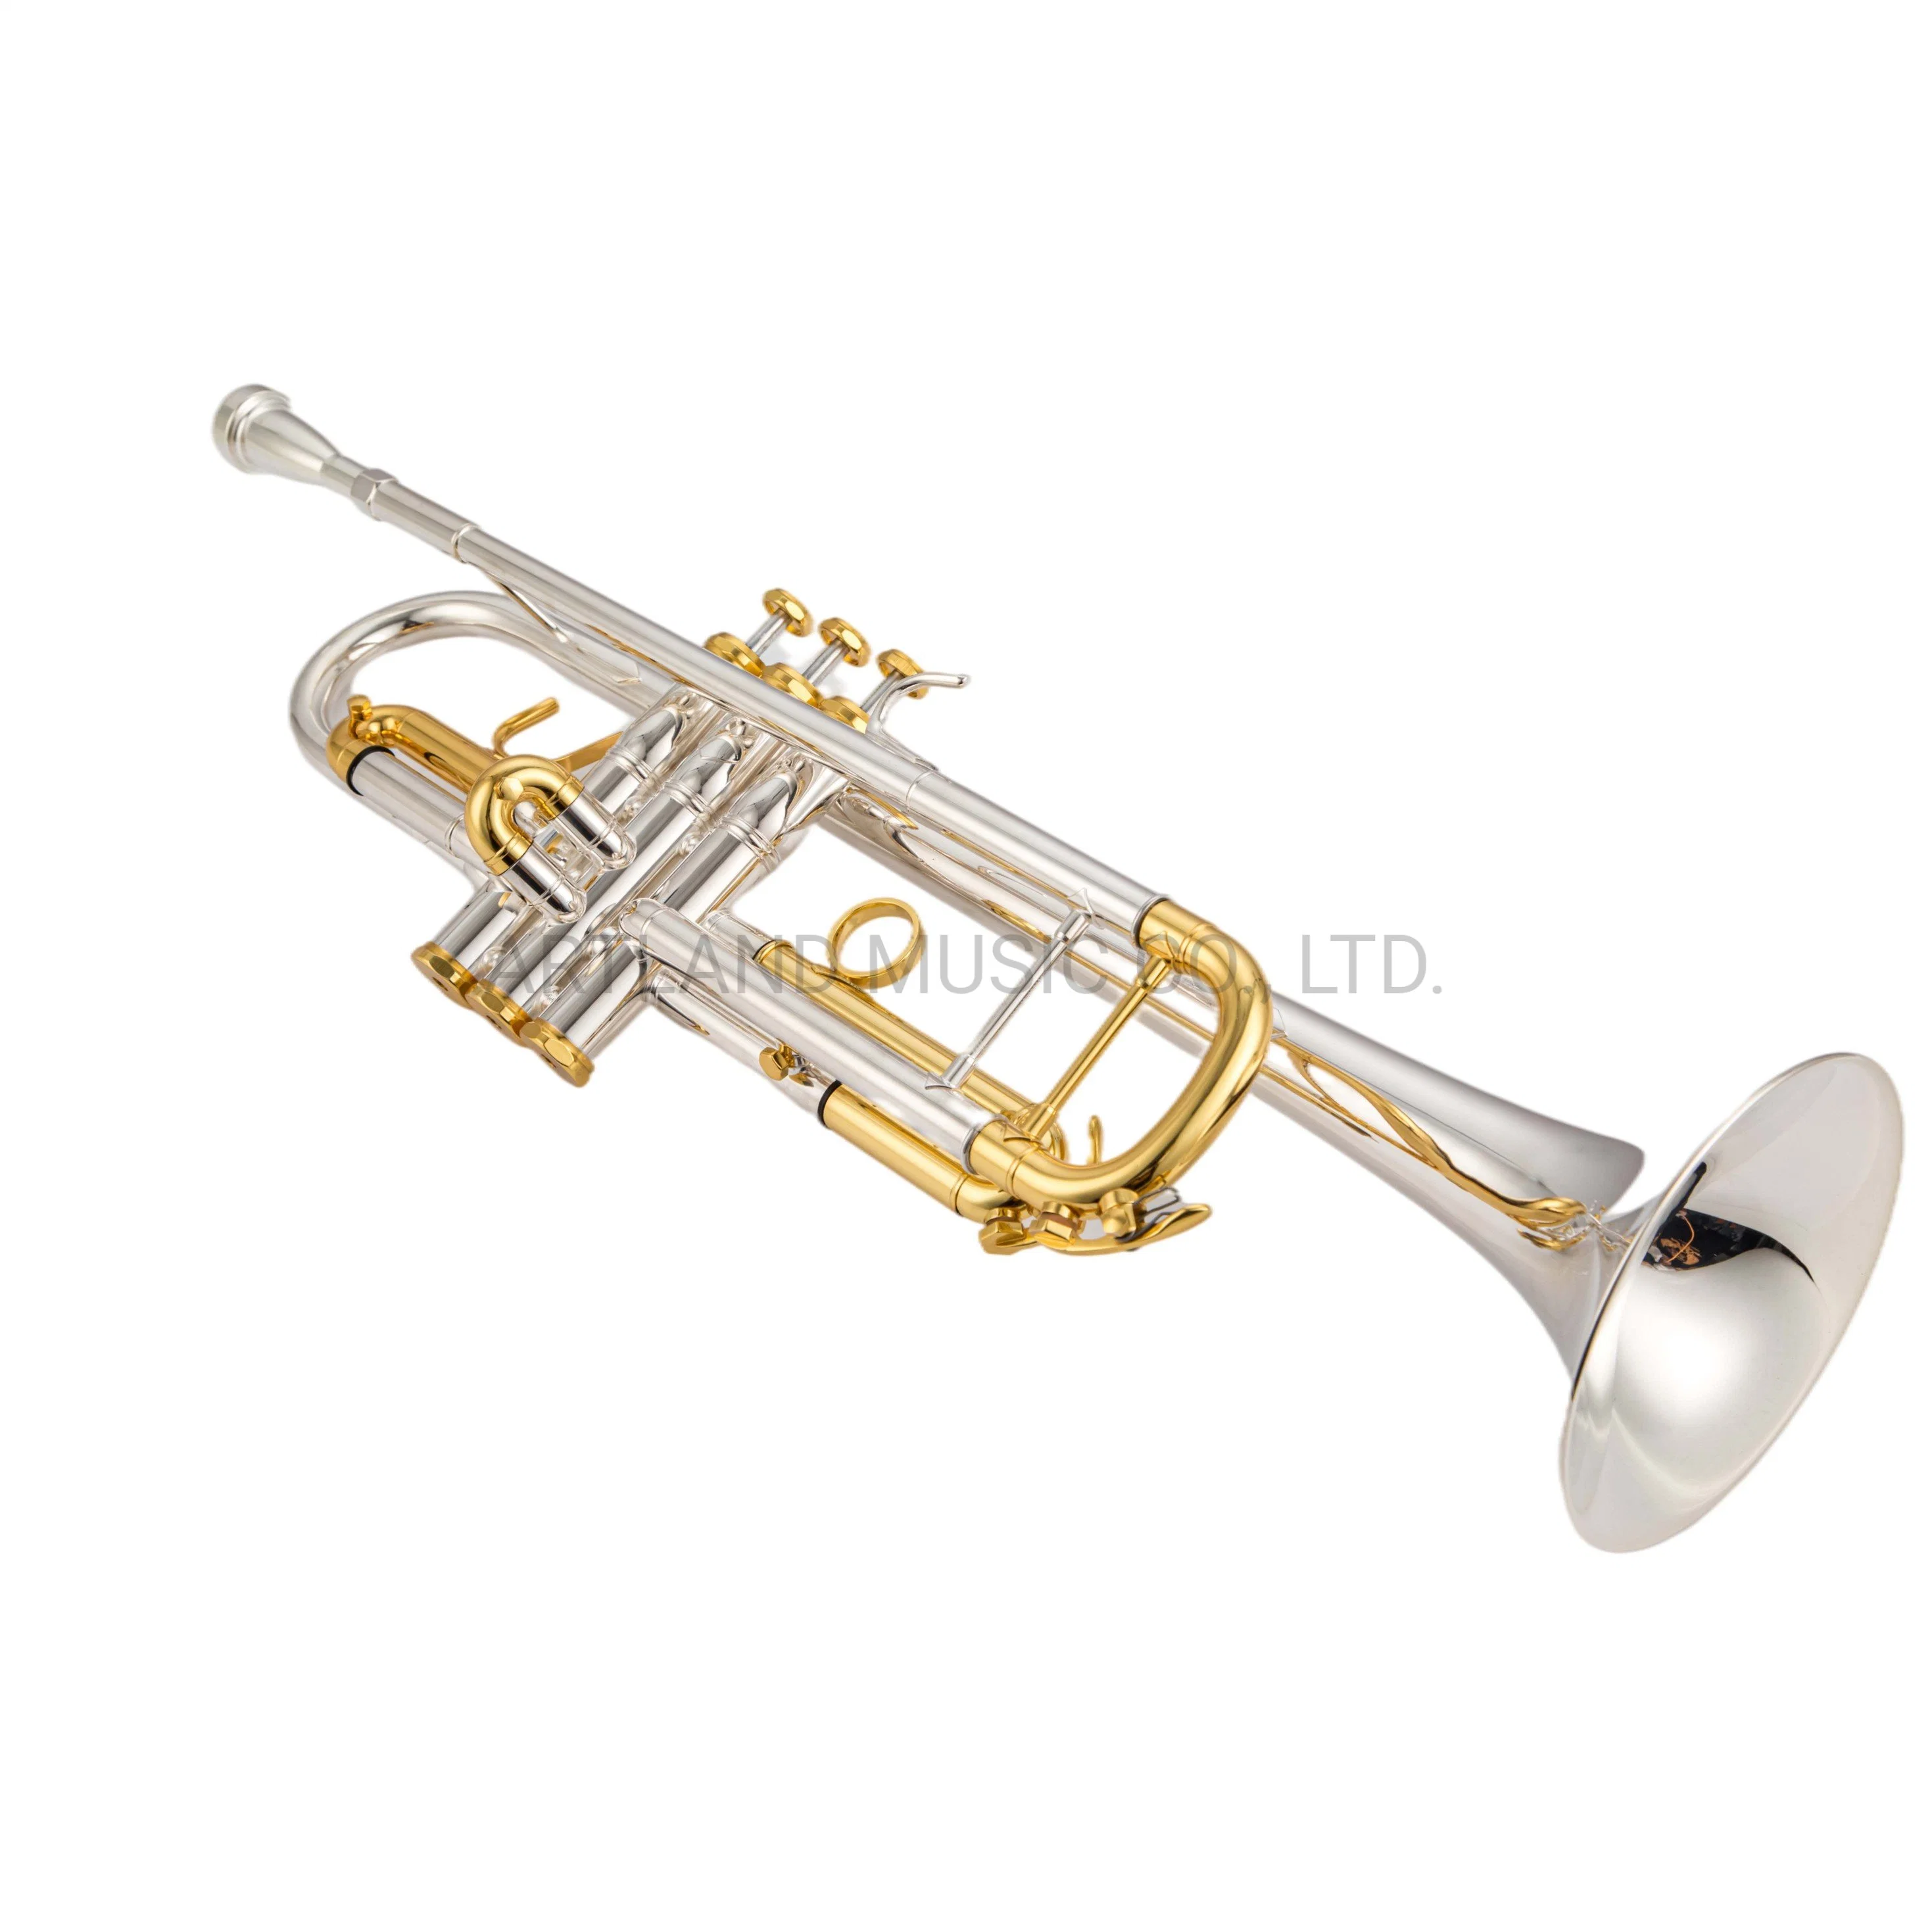 Trompeta Bach estilo plata con tapa dorada, incluye una boquilla 3c y 5c (ATR0275S).